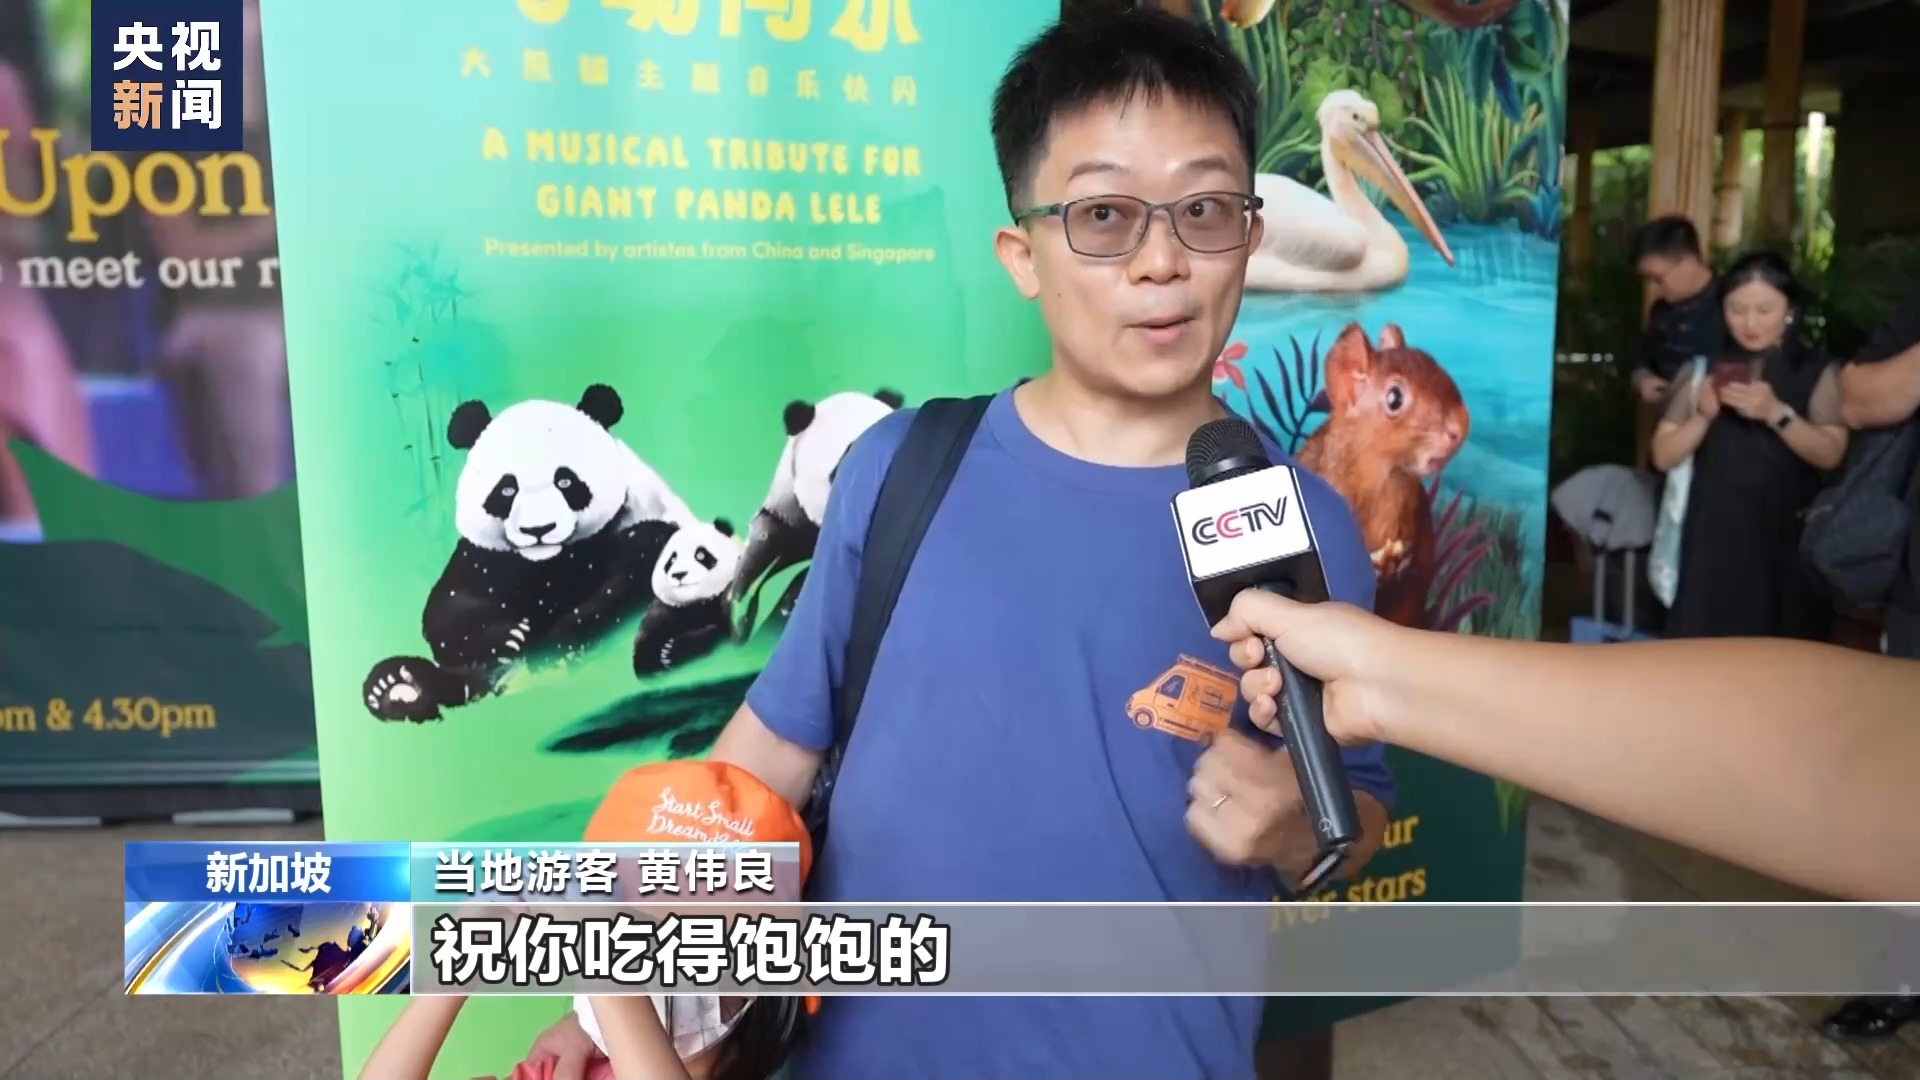 大熊猫“叻叻”即将回国 中新两国举办音乐活动送上祝福